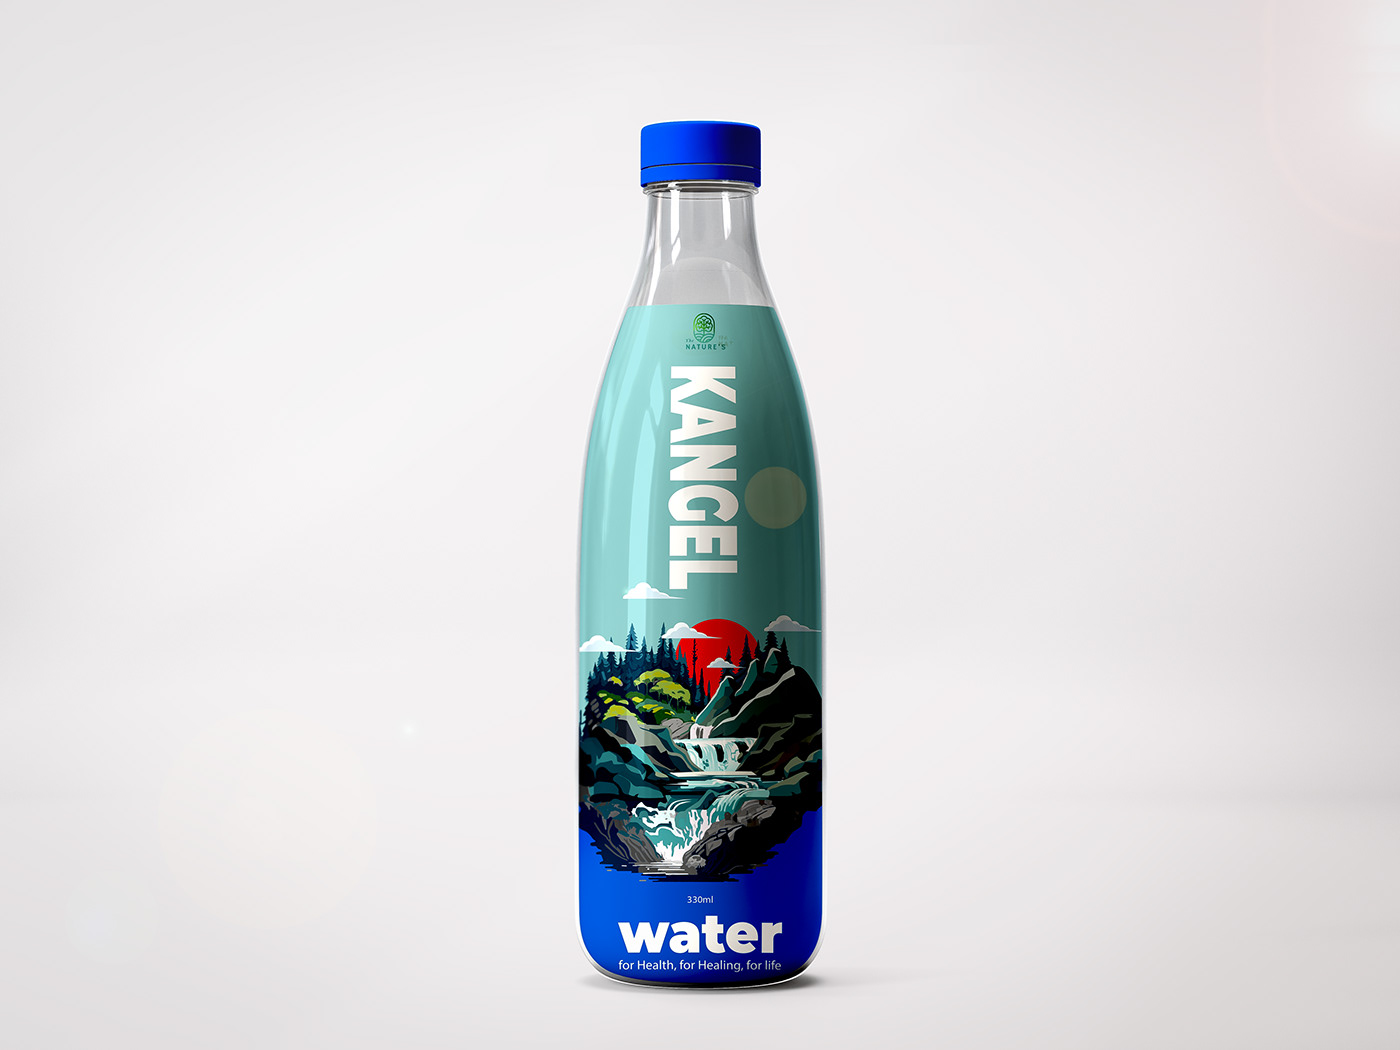 Packaging design label design Label bottle packaging design package product bottel design Water Bottle Label design